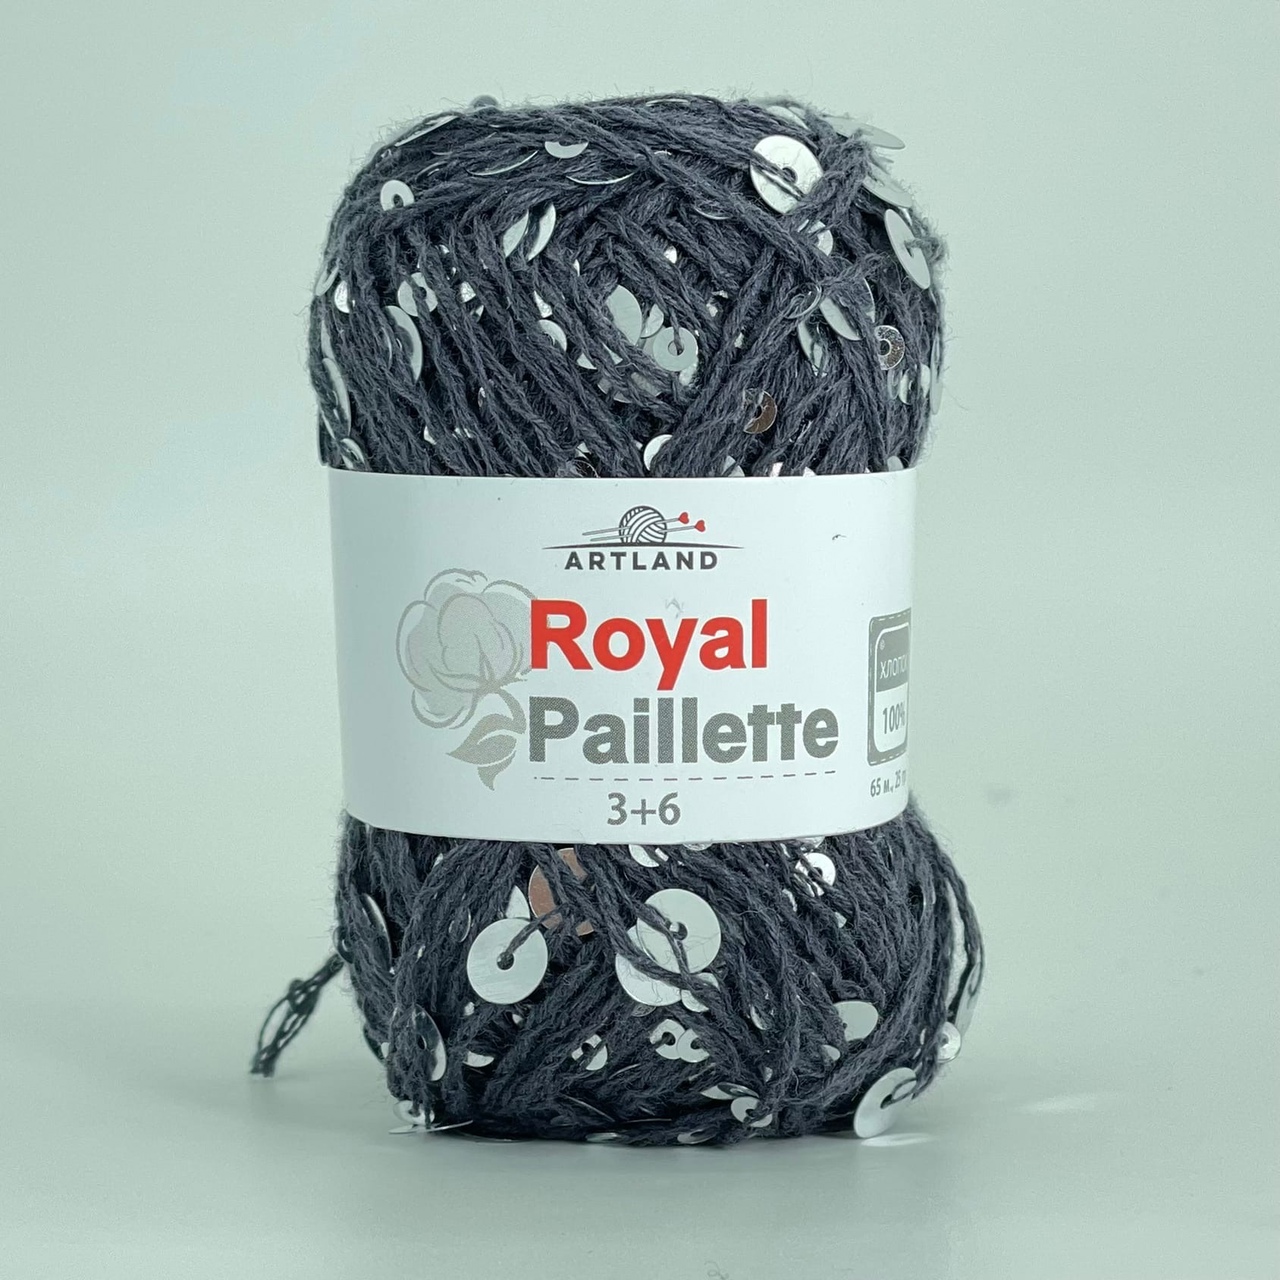 Artland Royal Paillette      